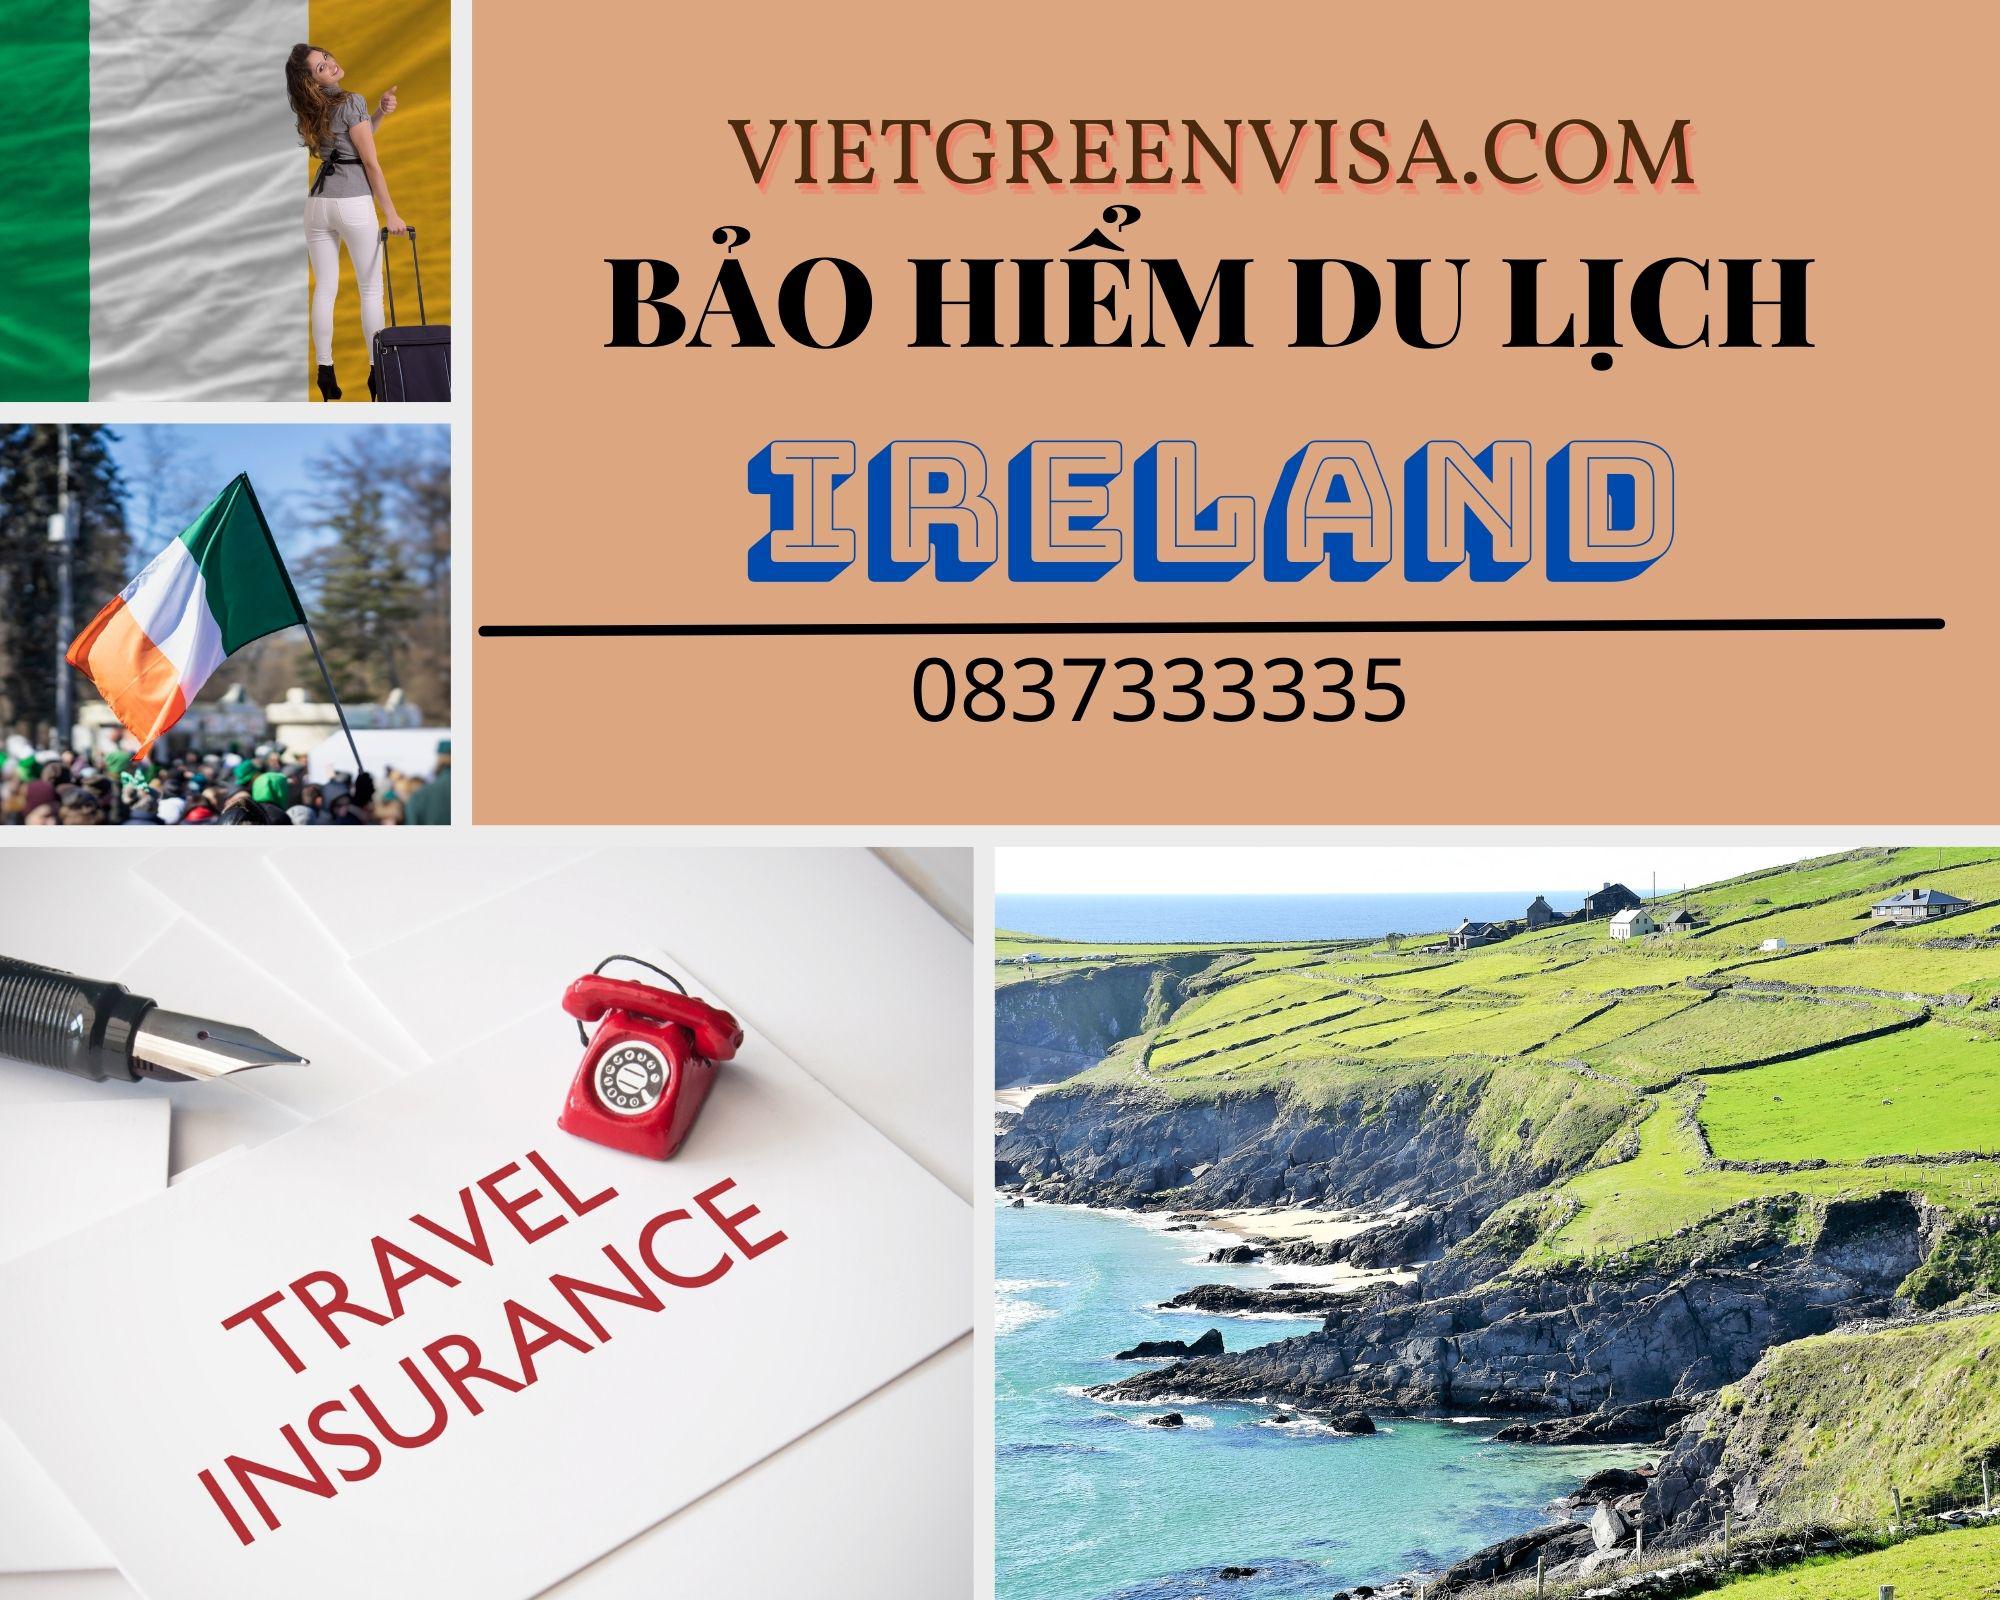 Dịch vụ bảo hiểm du lịch xin visa Ireland giá rẻ